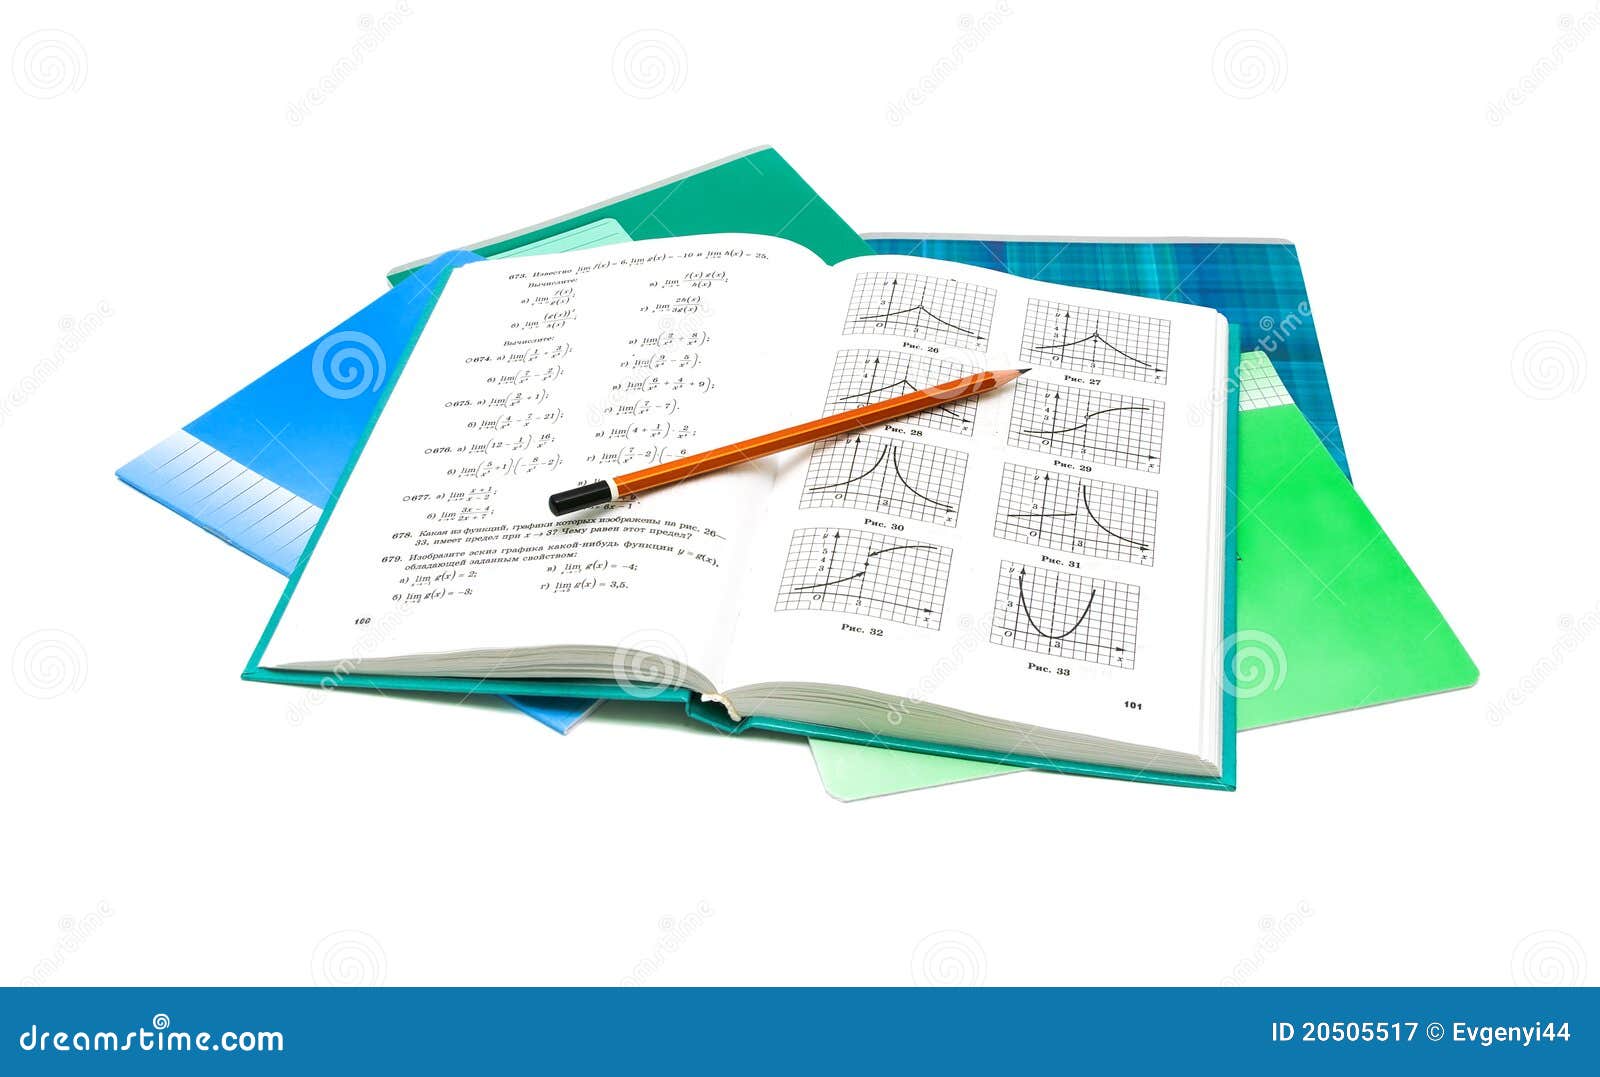 Открывай тетрадь учебник. Книжки и тетрадки. Книги по математике на белом фоне. Математика на белом фоне учебник. Ученическая тетрадь с ручкой.